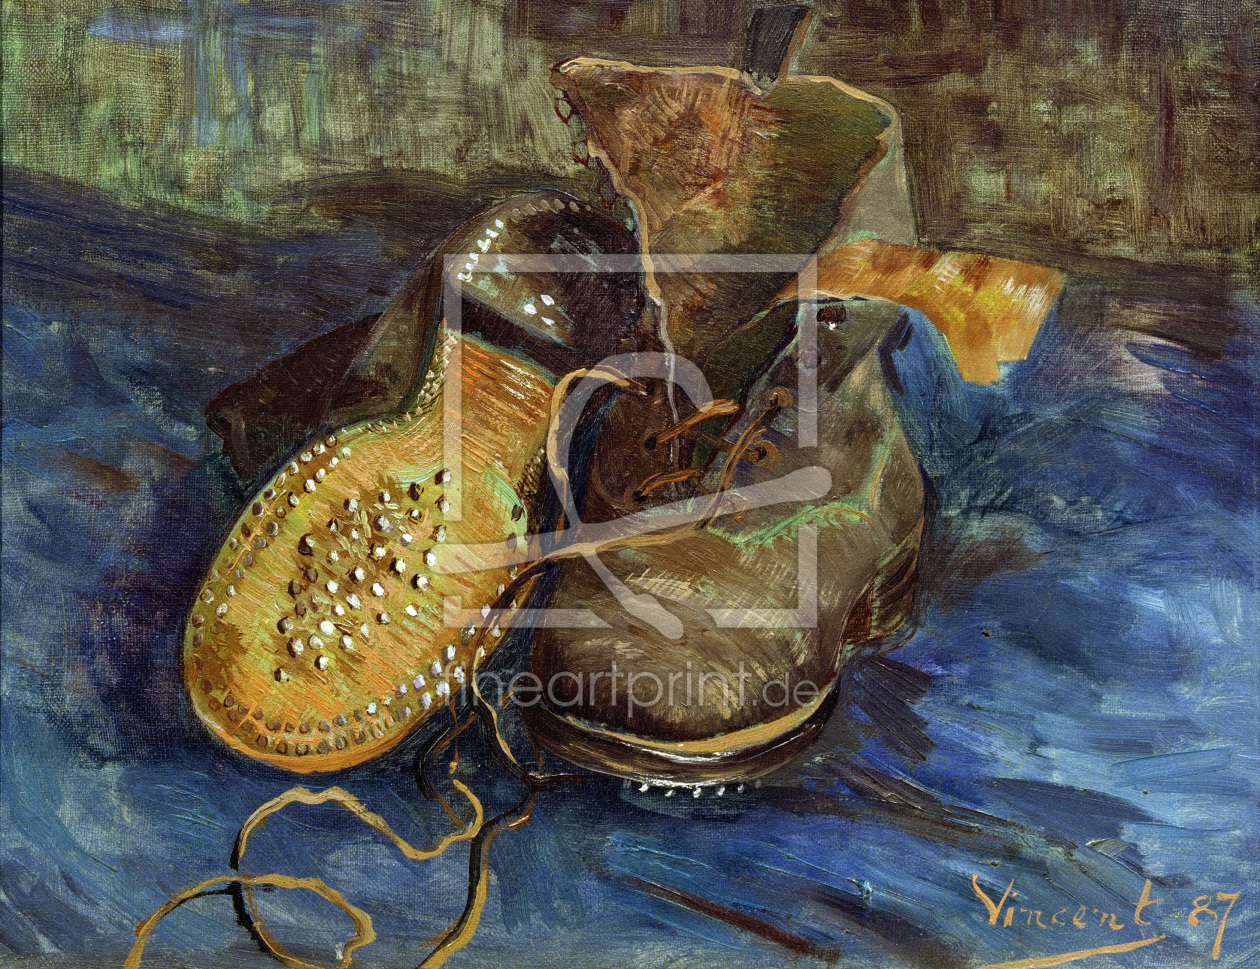 Bild-Nr.: 30003414 V.van Gogh / A Pair of Shoes / 1887 erstellt von van Gogh, Vincent